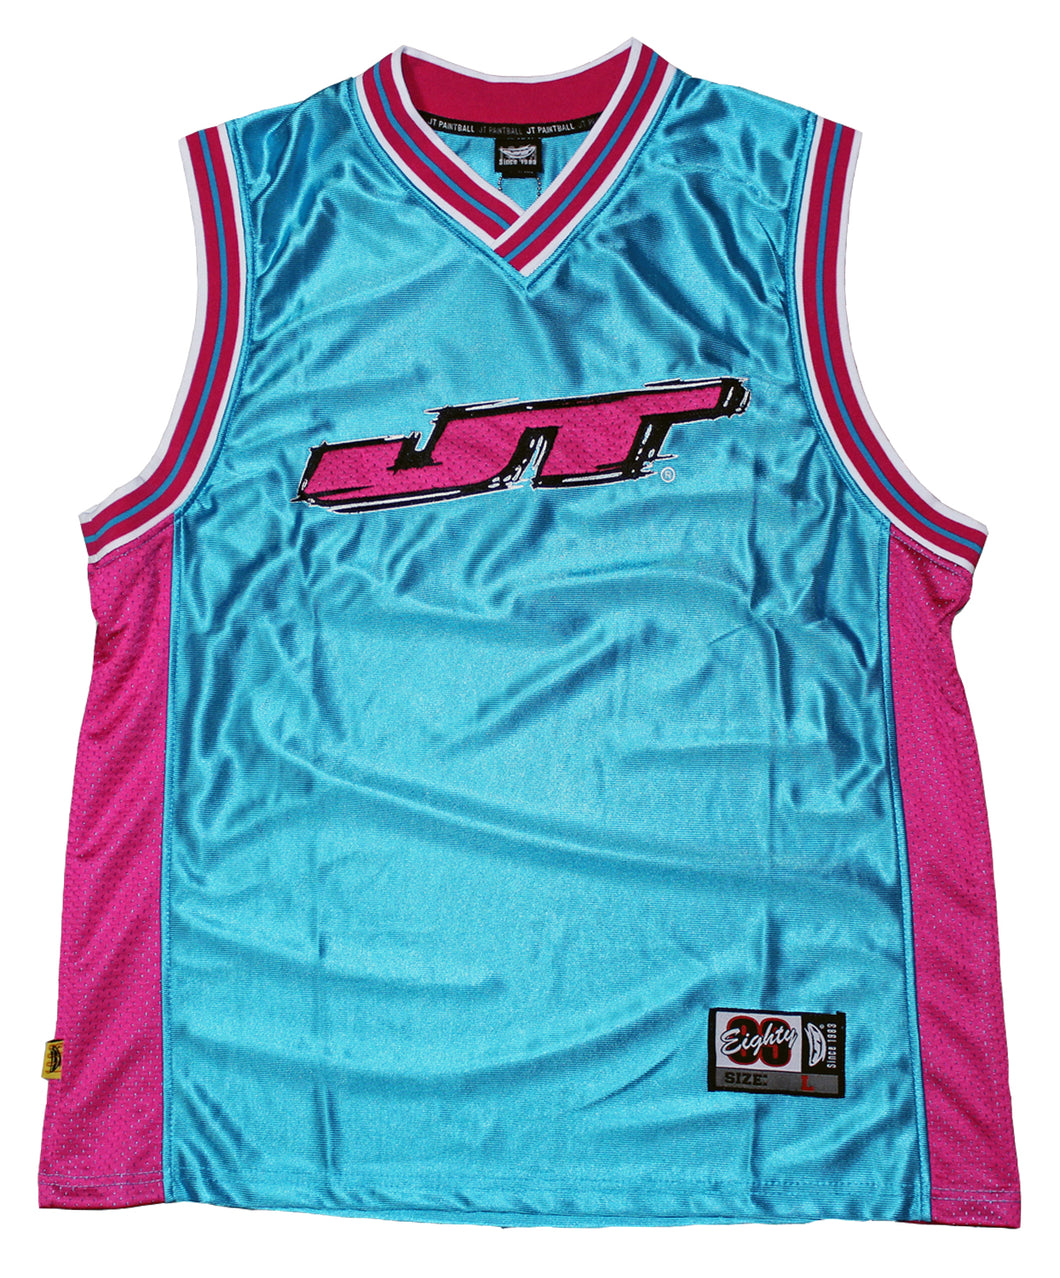 JT Basketball Jersey - Blue/Pink